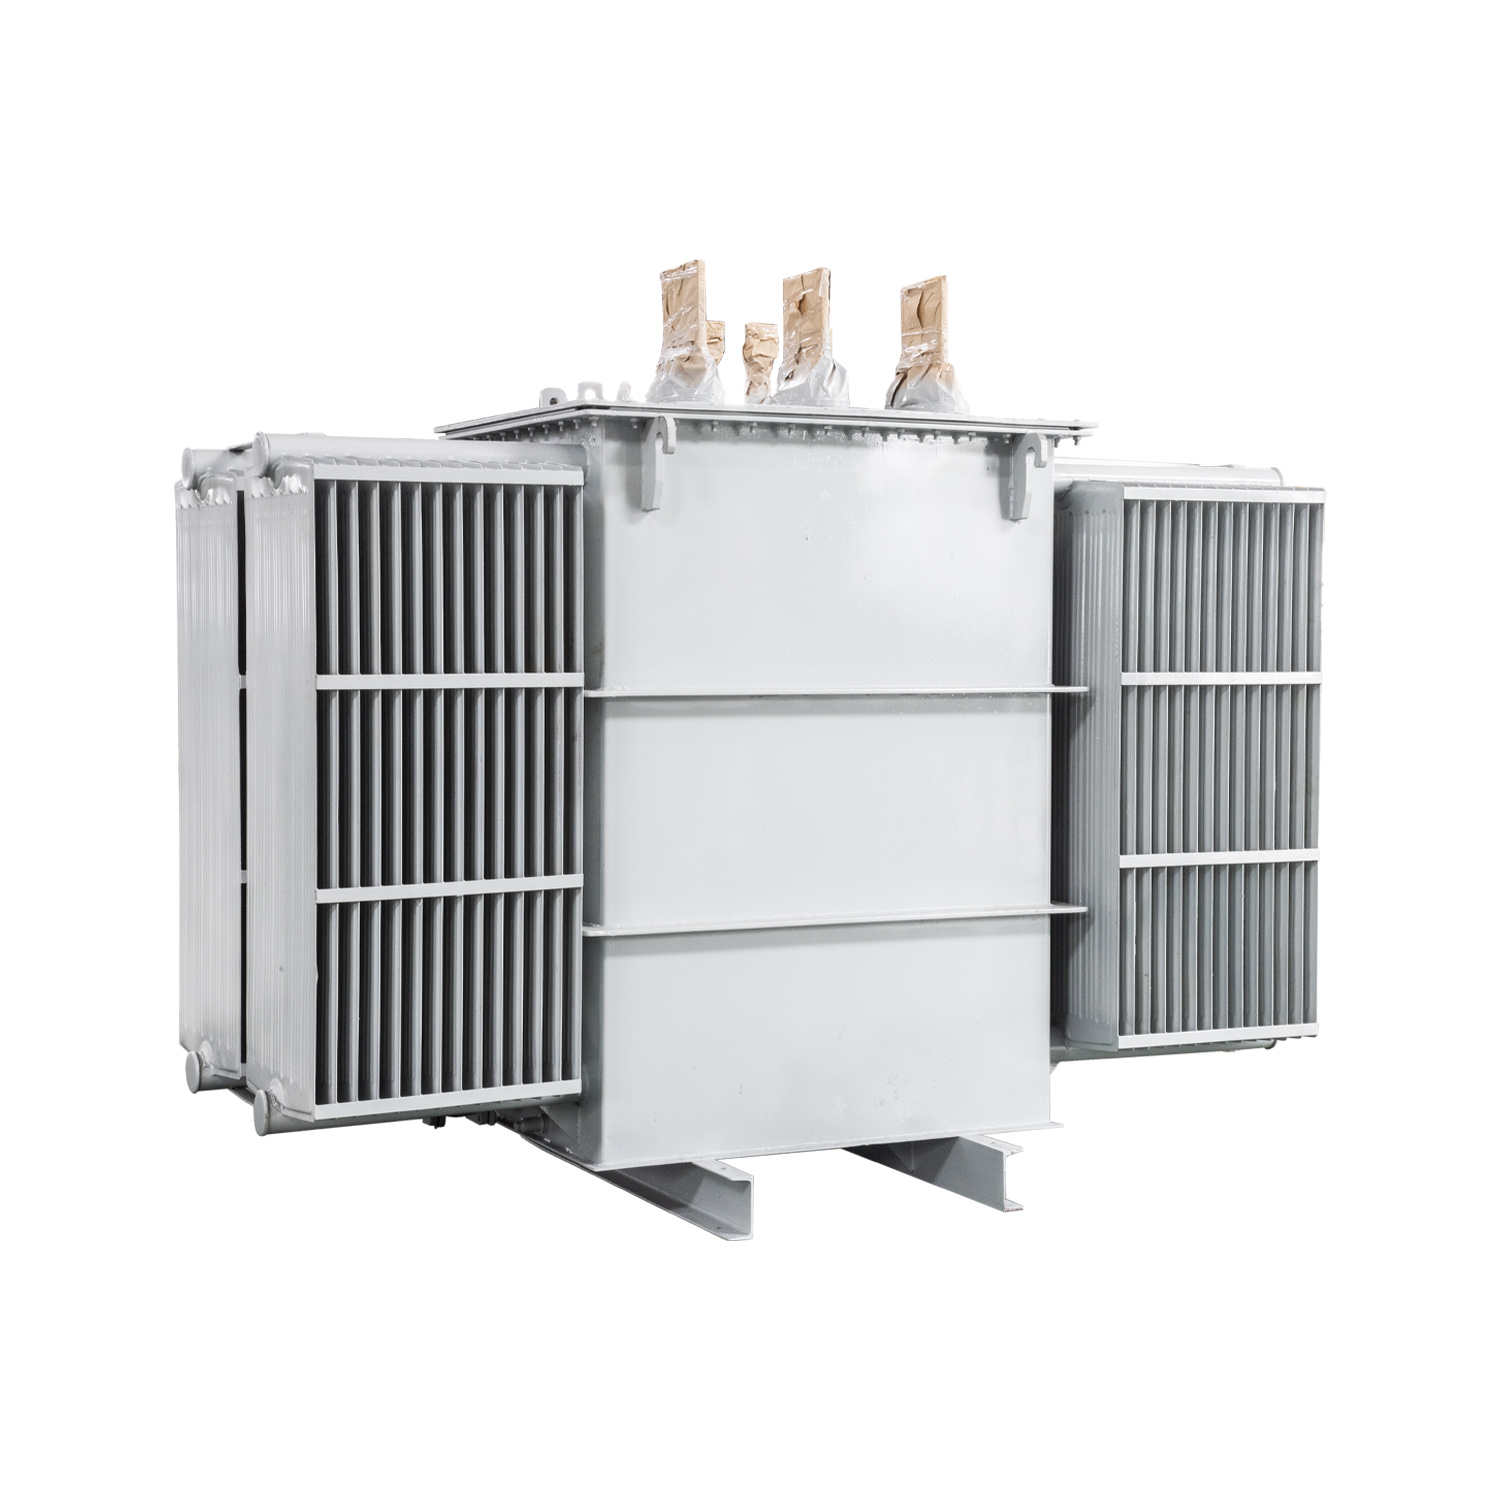 CE 1000 kVA cracking furnace magnetic voltage regulator